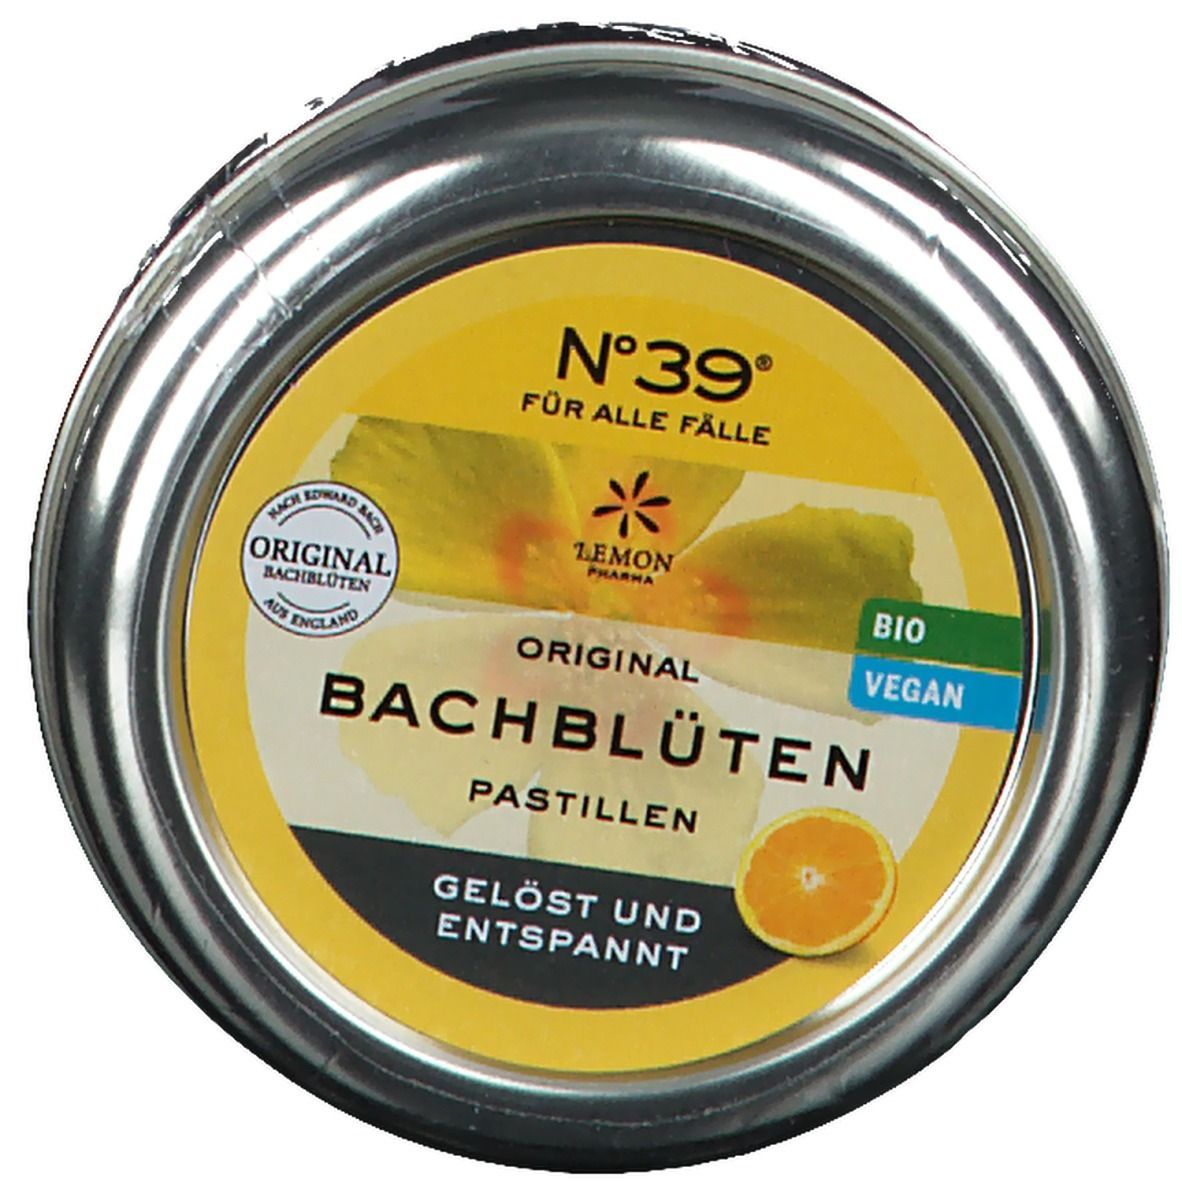 No. 39® Für alle Fälle Original Bachblüten Pastillen